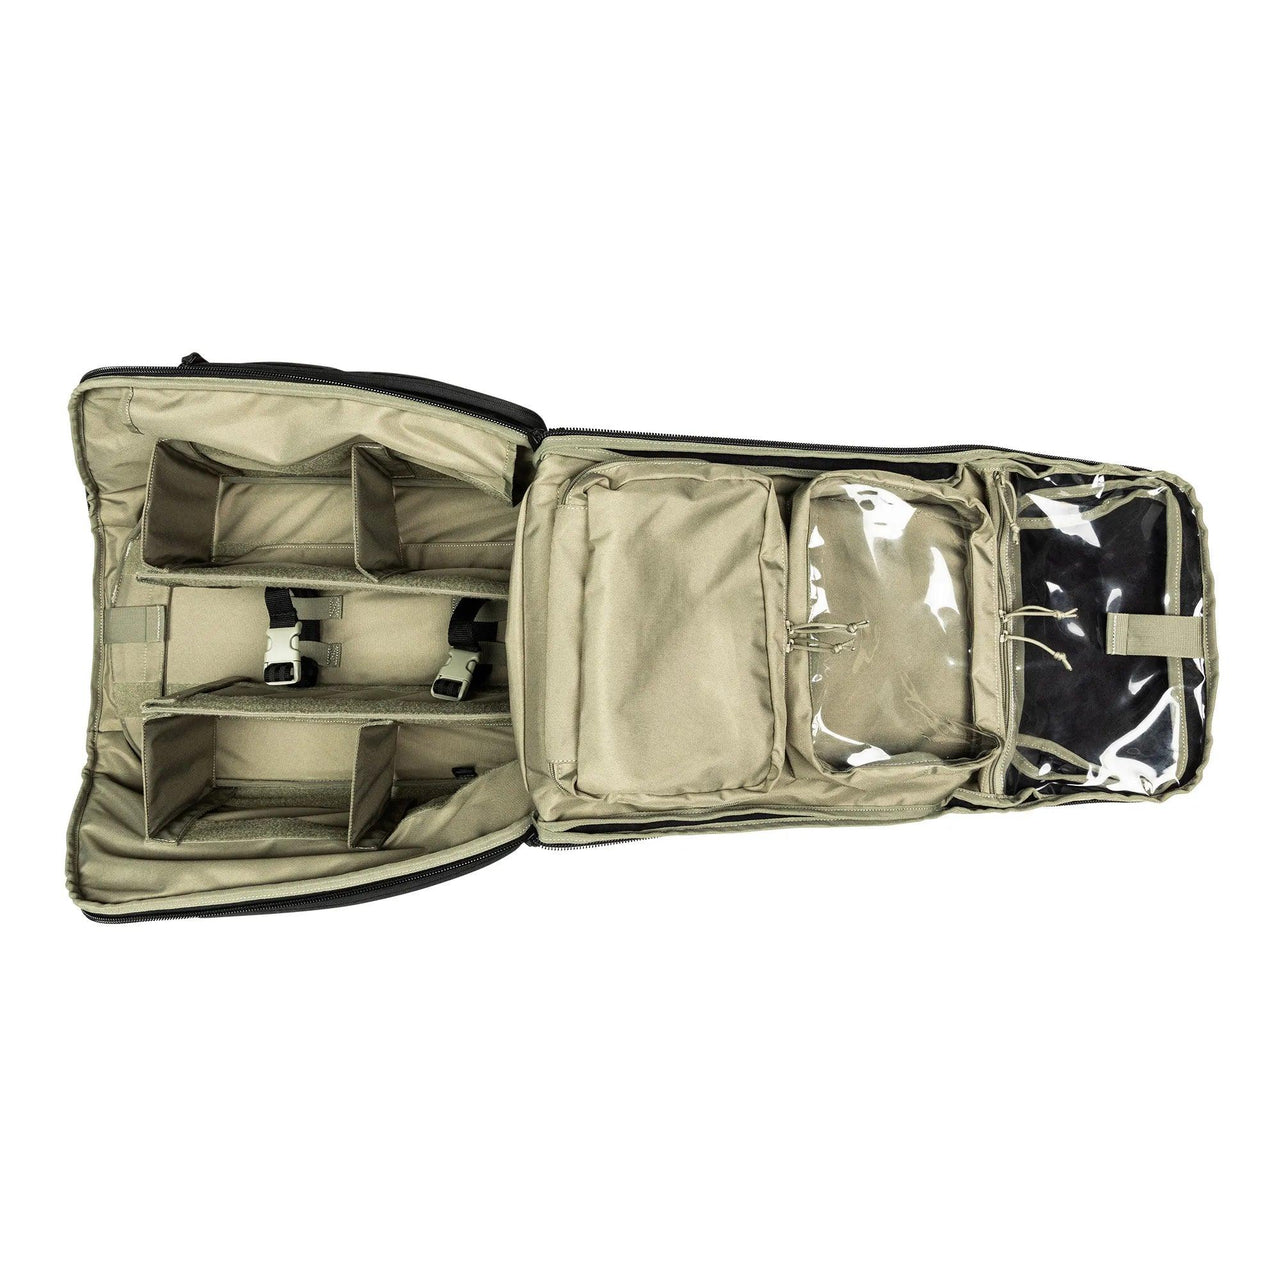 Responder 72 EMS Backpack - Vendor